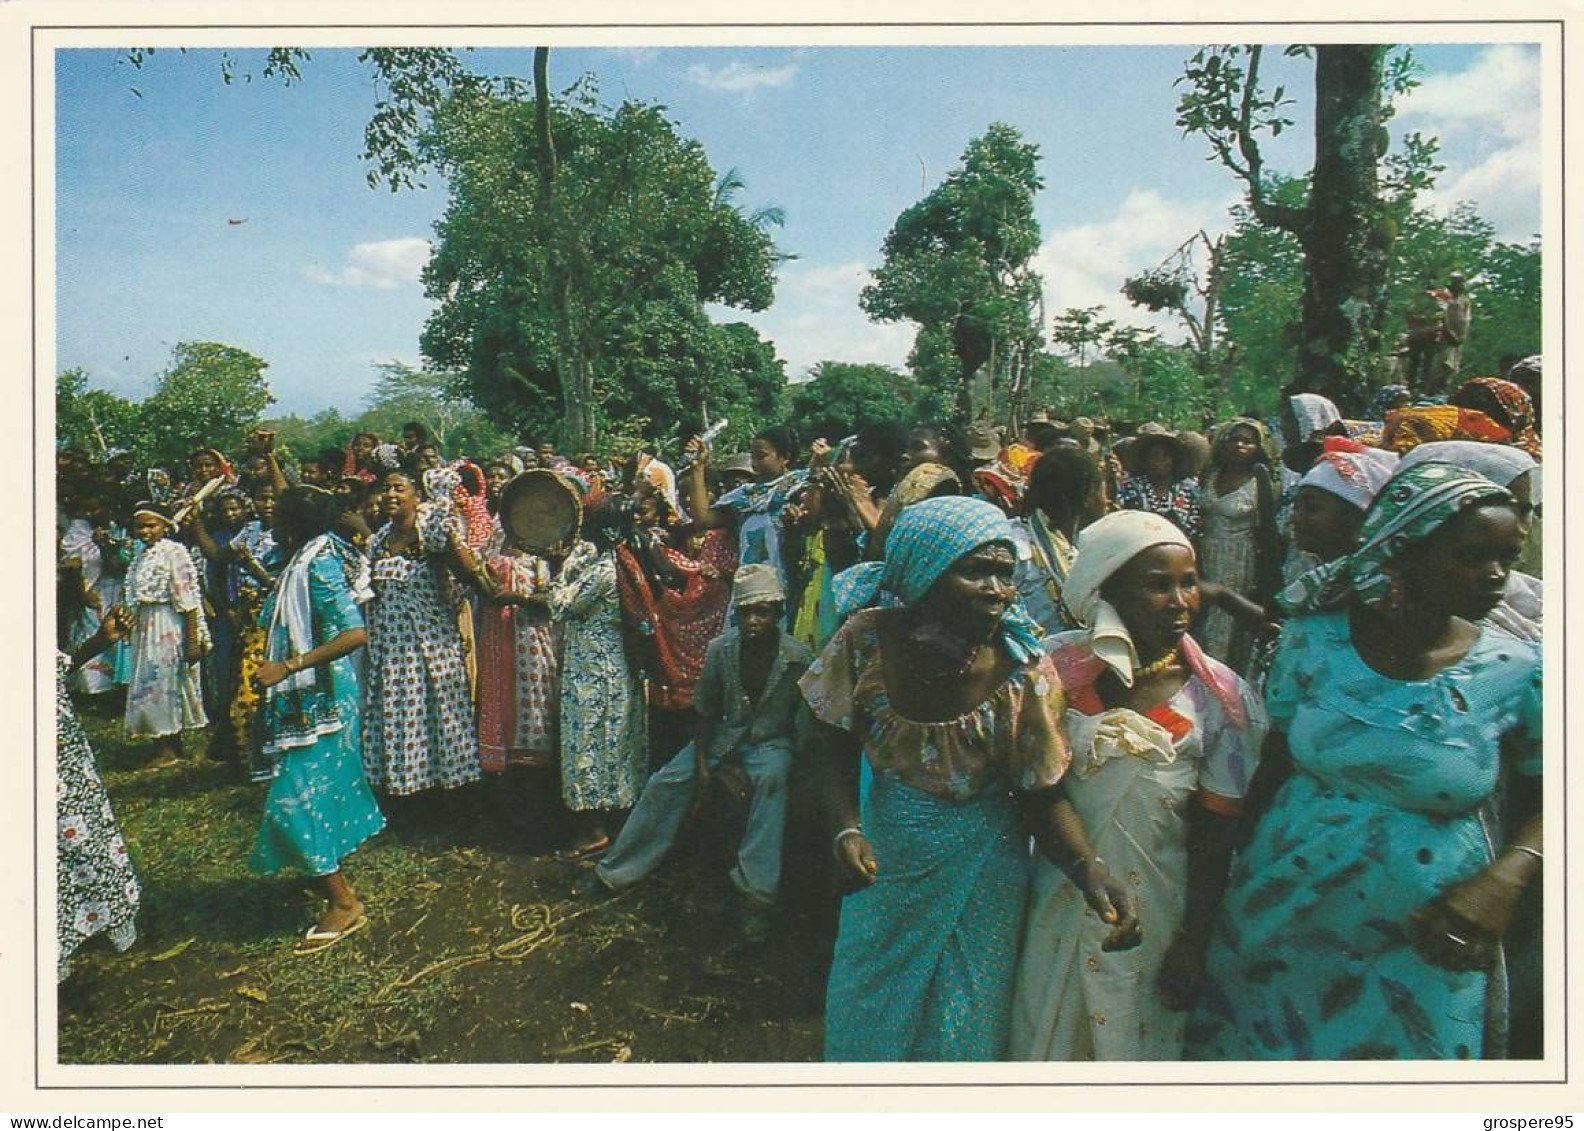 GRANDE COMORES NGAZIDJA DANSE DU PILON WADAHA + FEMMES EN FETE + PLAGE ET HOTEL ITSANDRA 1988 - Comores